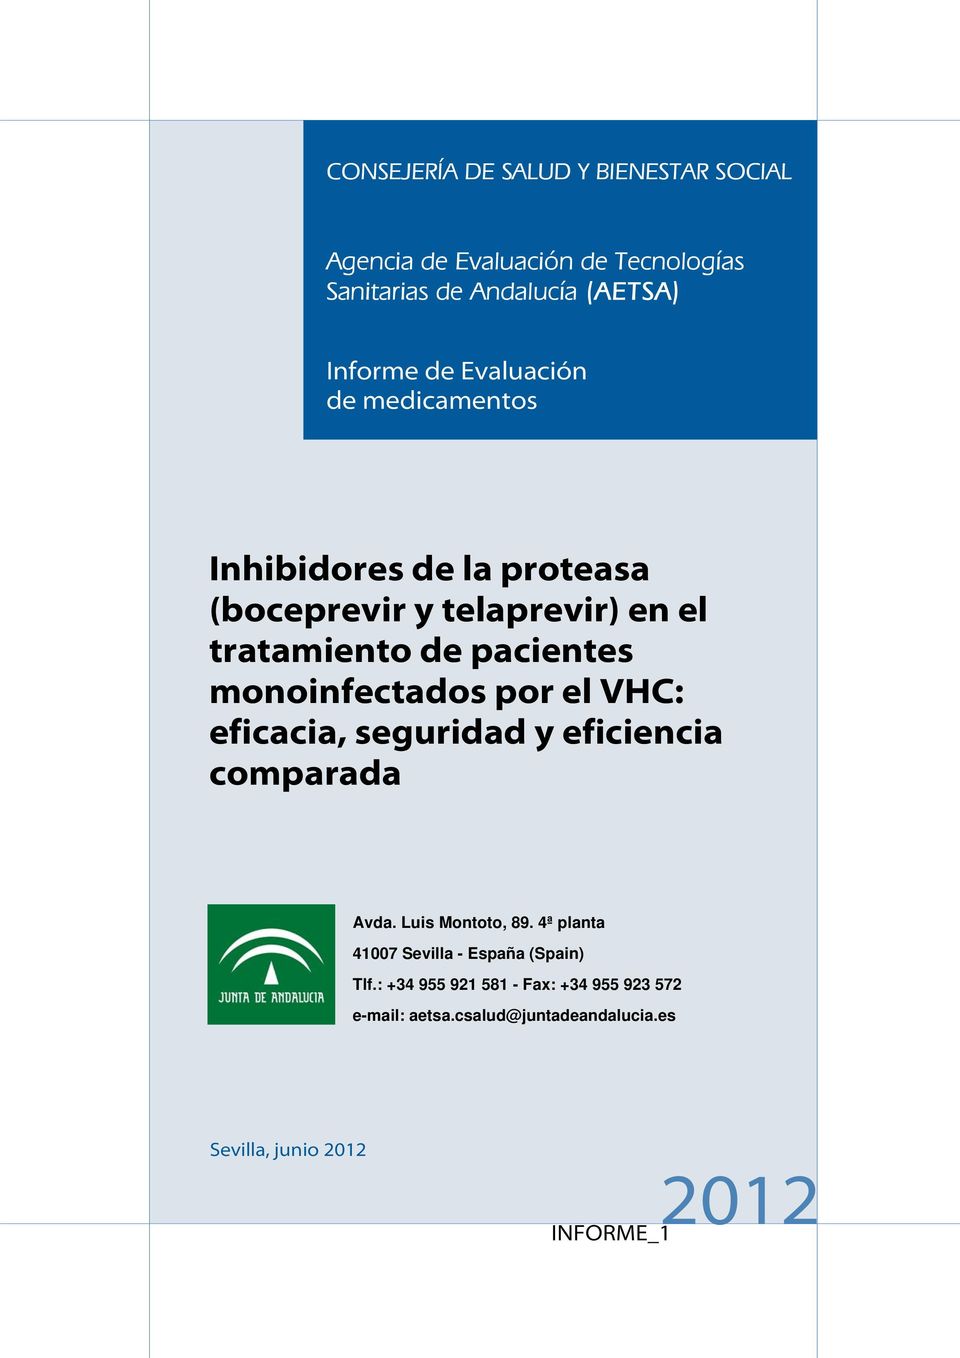 monoinfectados por el VHC: eficacia, seguridad y eficiencia comparada Avda. Luis Montoto, 89.